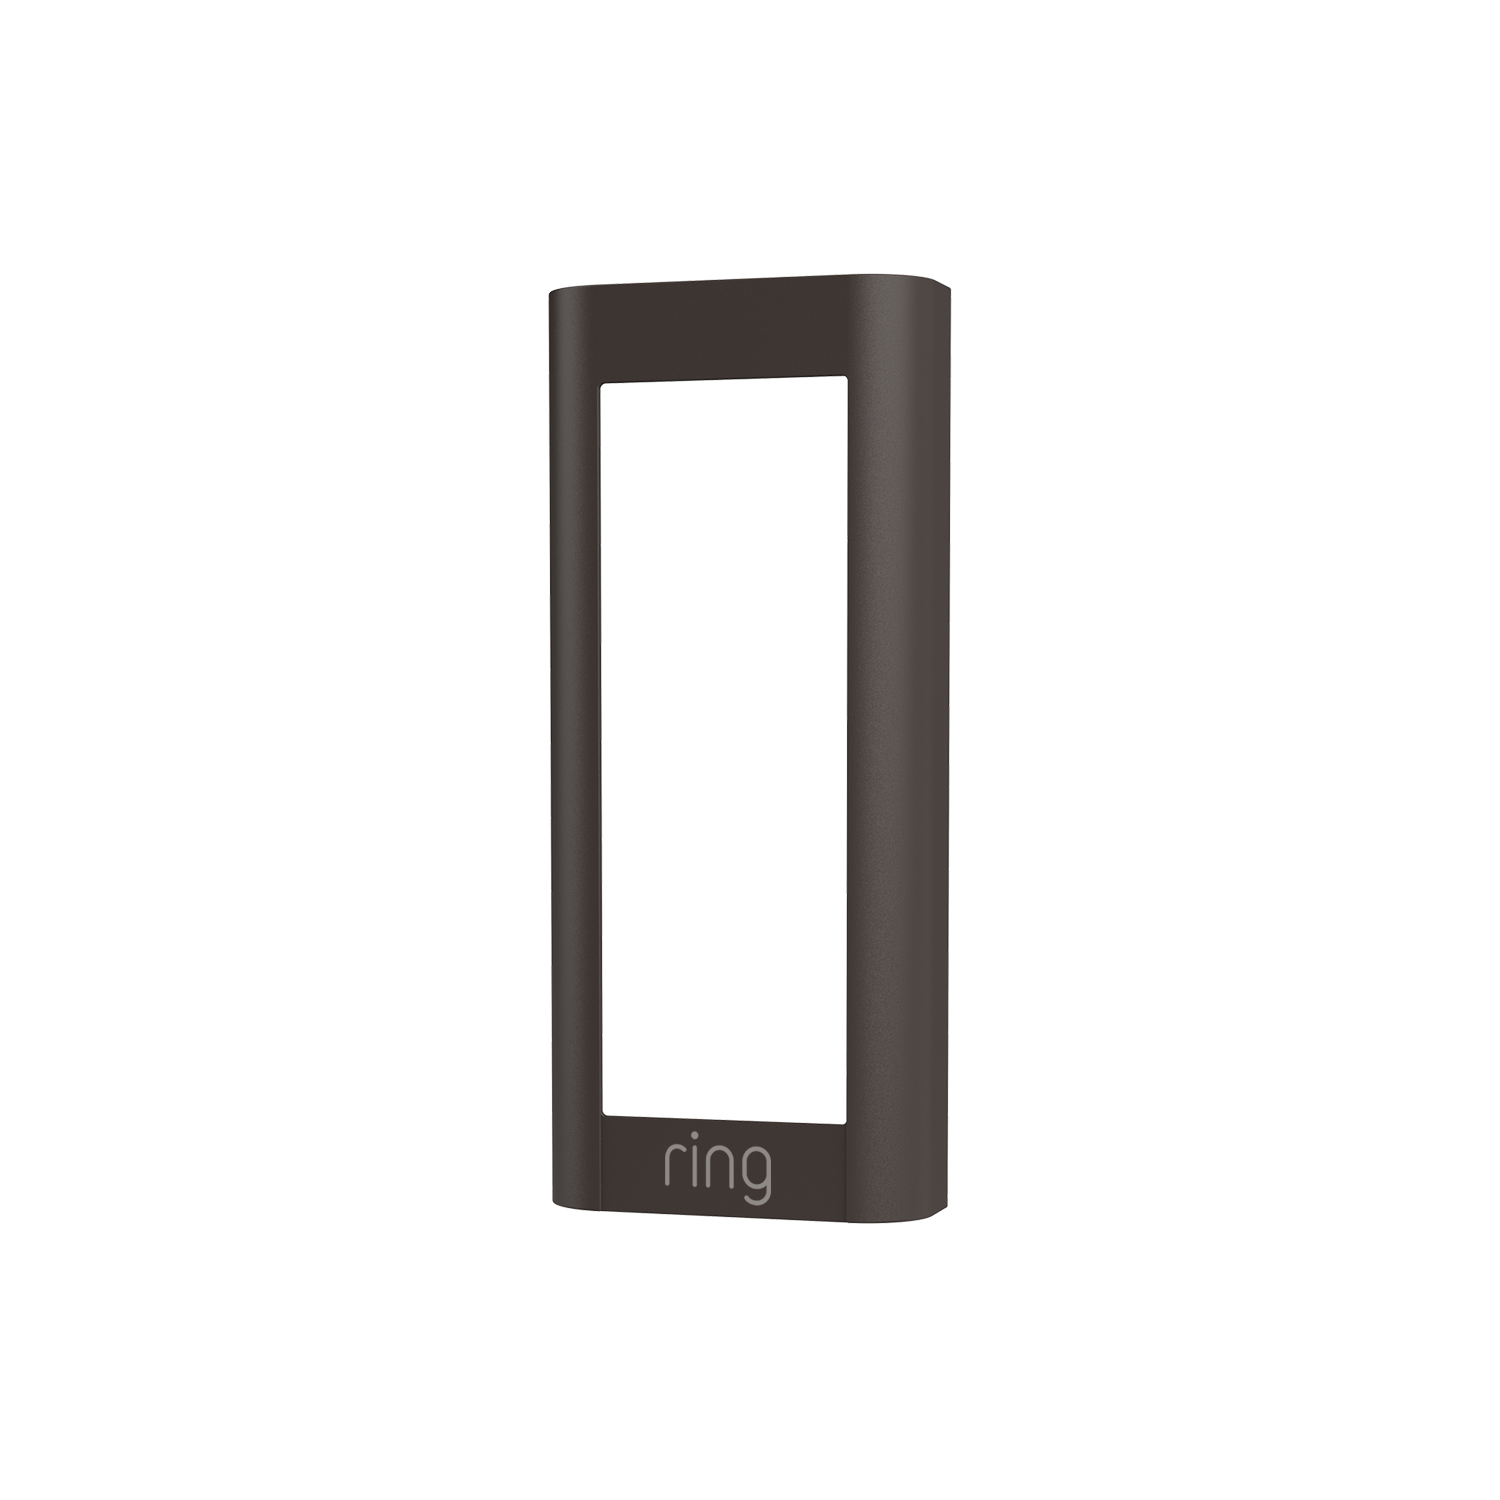 Interchangeable Faceplate (for Wired Video Doorbell Pro (Video Doorbell Pro 2)) - Mocha Brown